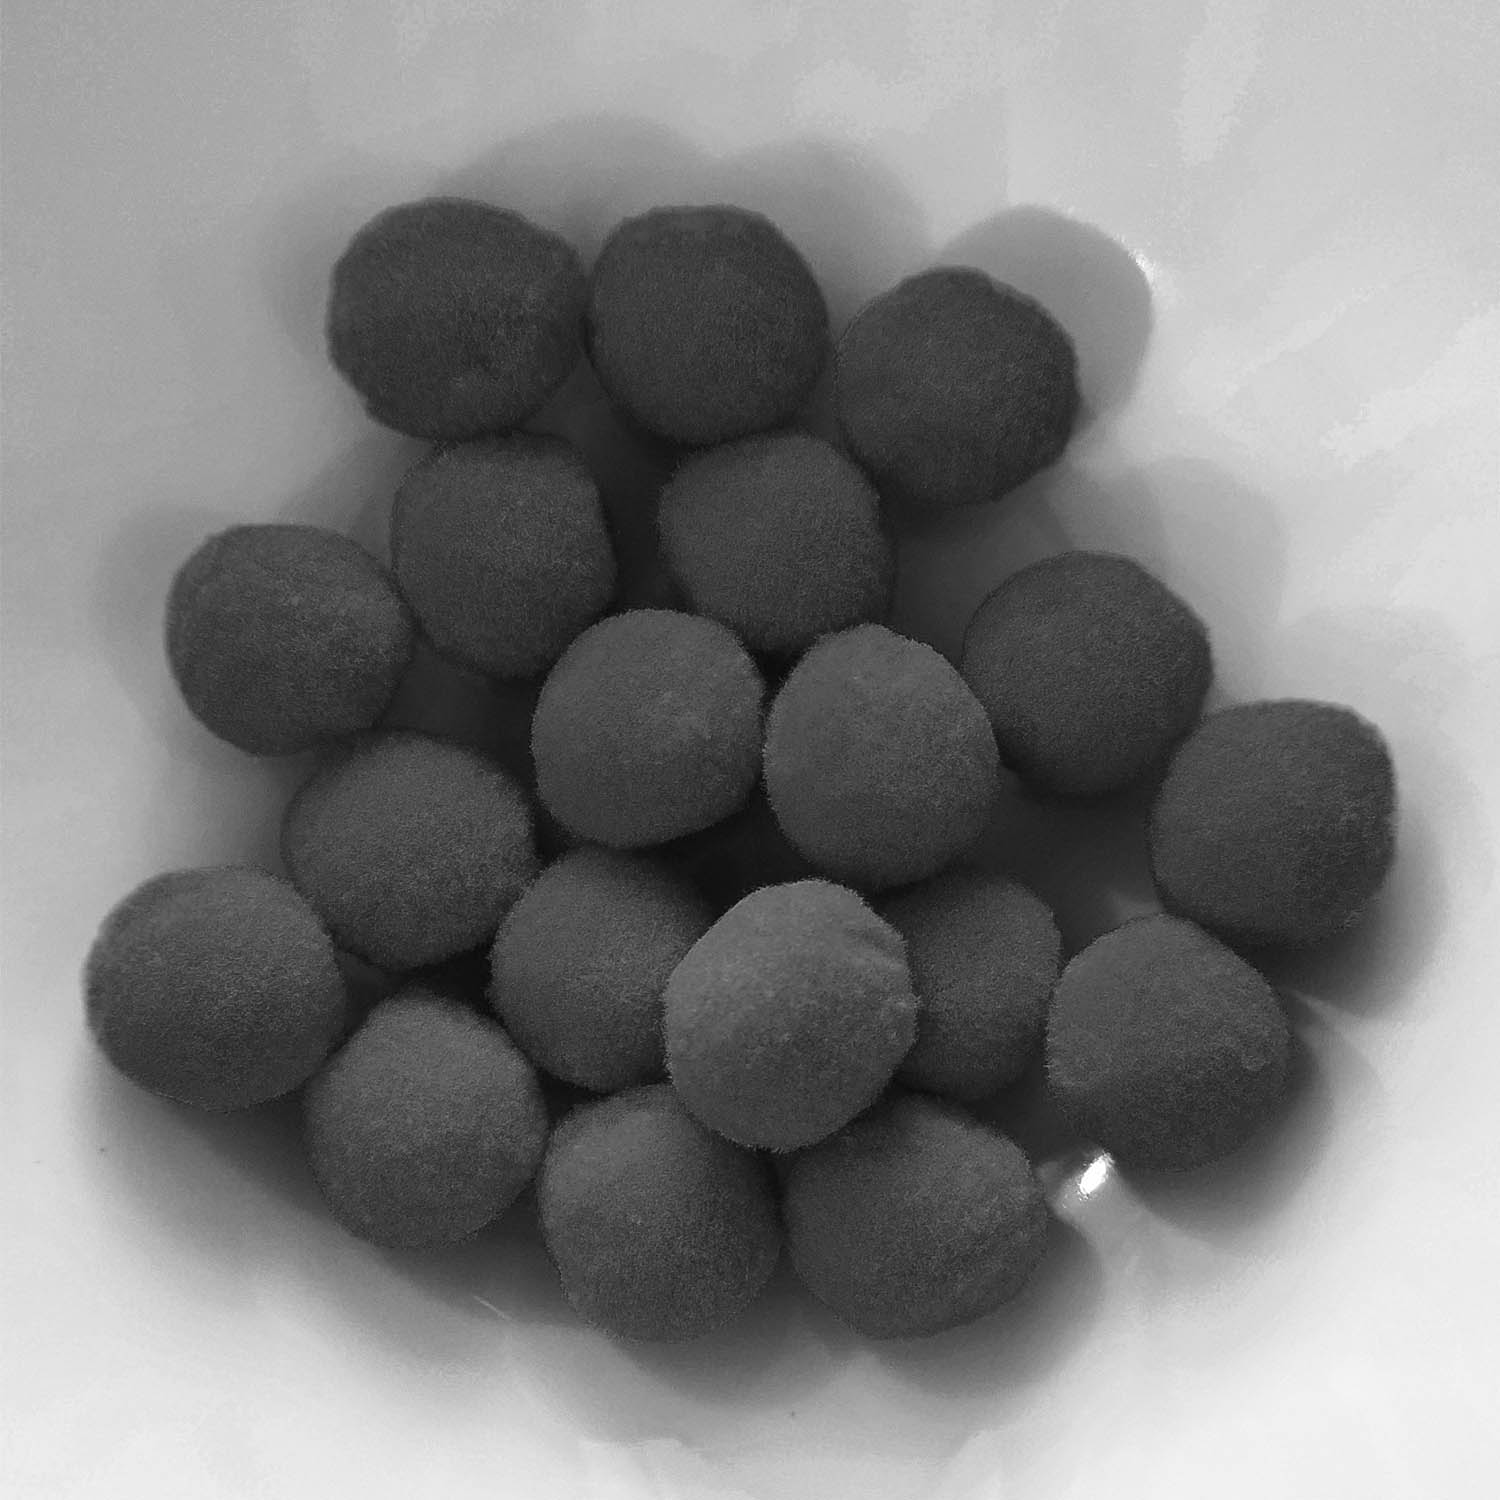 PomPon / Bälle aus Baumwolle - 20 mm / 25er Set - Grau dunkel